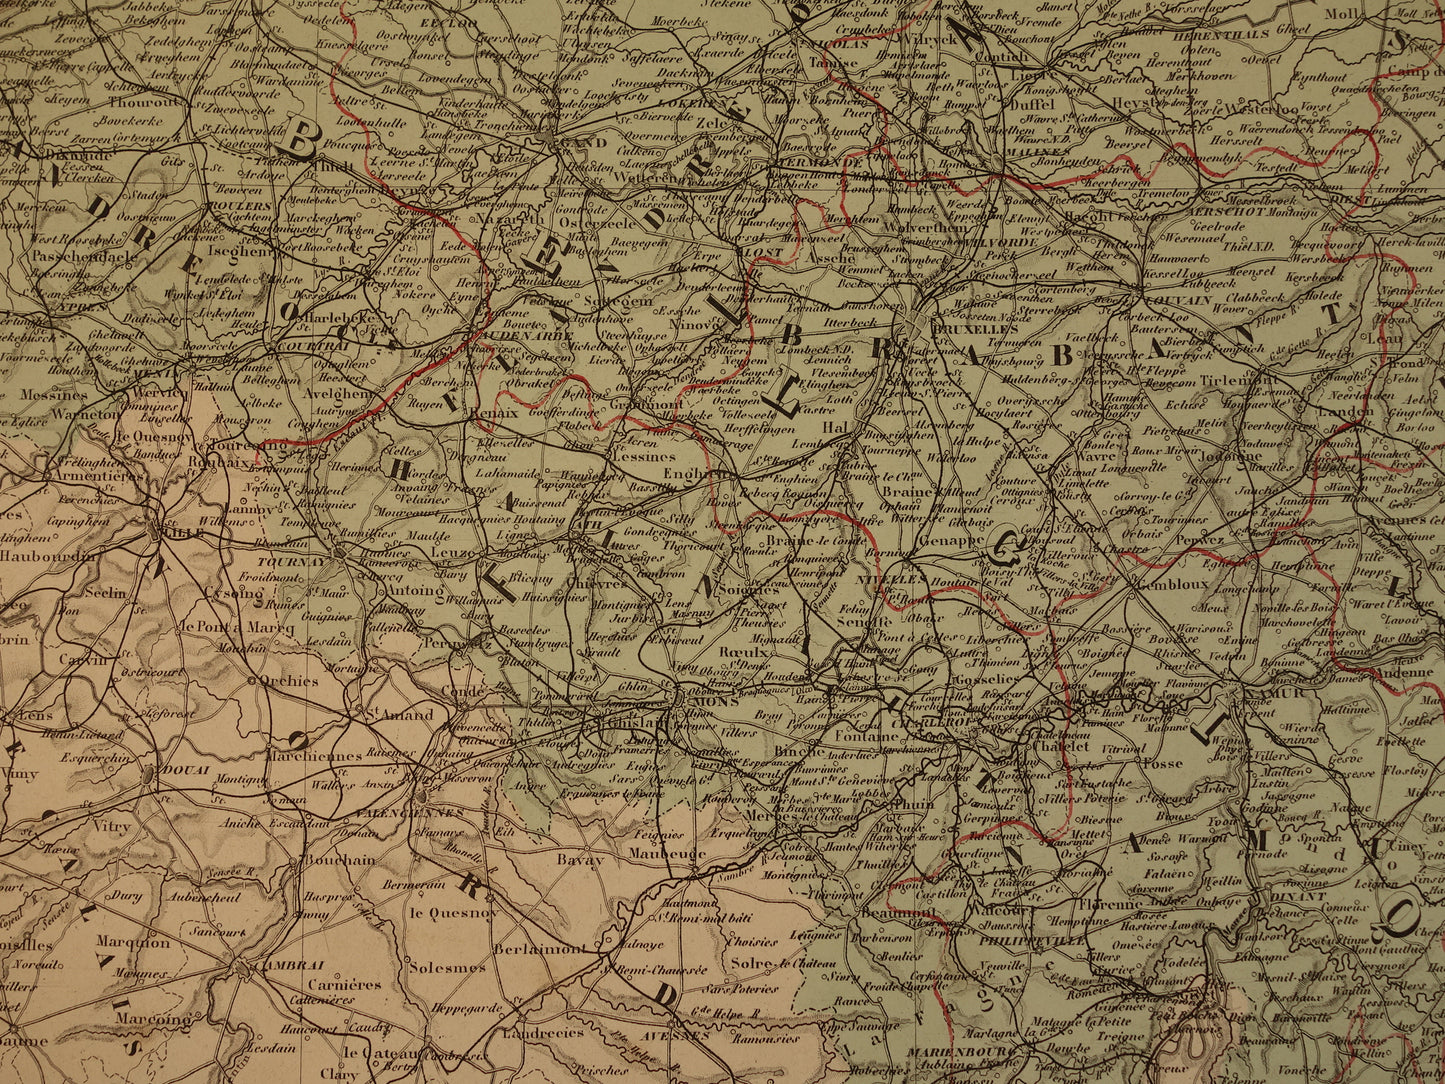 Grote Oude landkaart van Nederland en België 1878 originele antieke zeer grote kaart poster